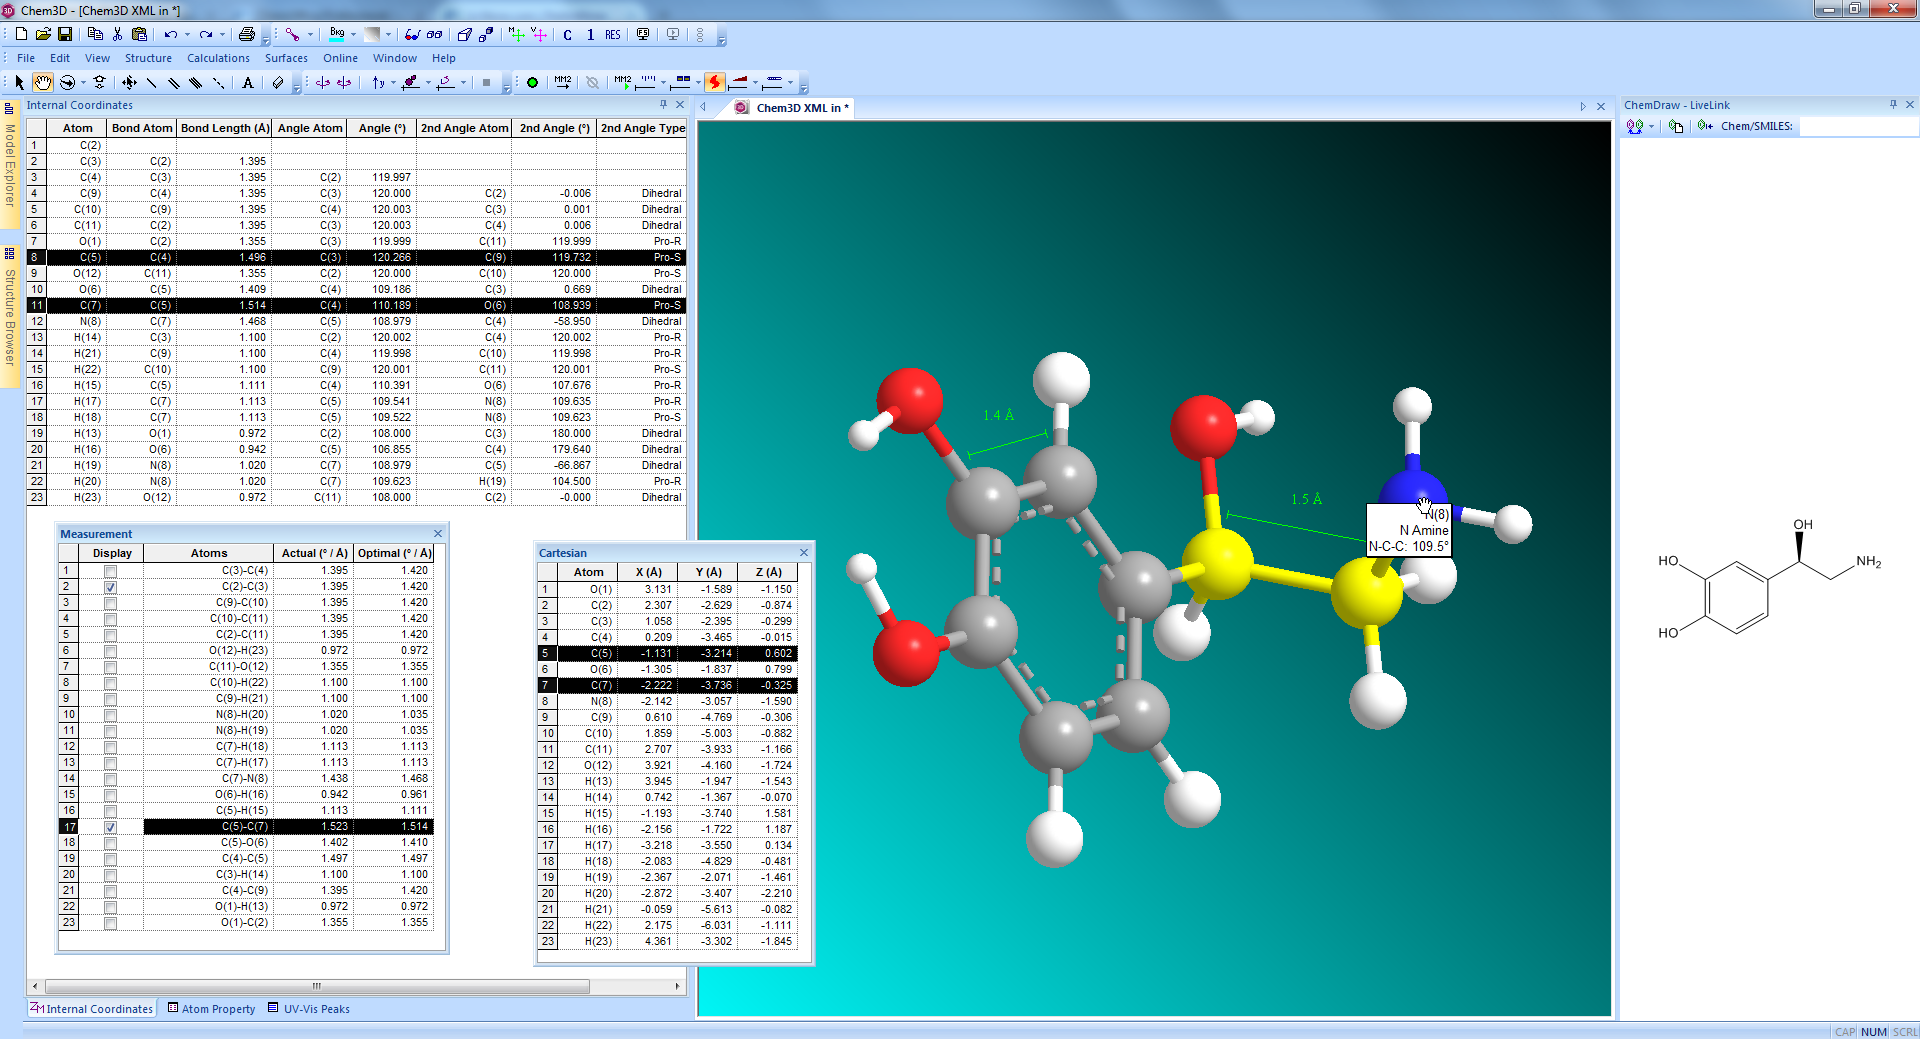 Chem3D: Auswahl an nützlichen Funktionen zur Darstellung struktureller Eigenschaften des betrachteten Moleküls